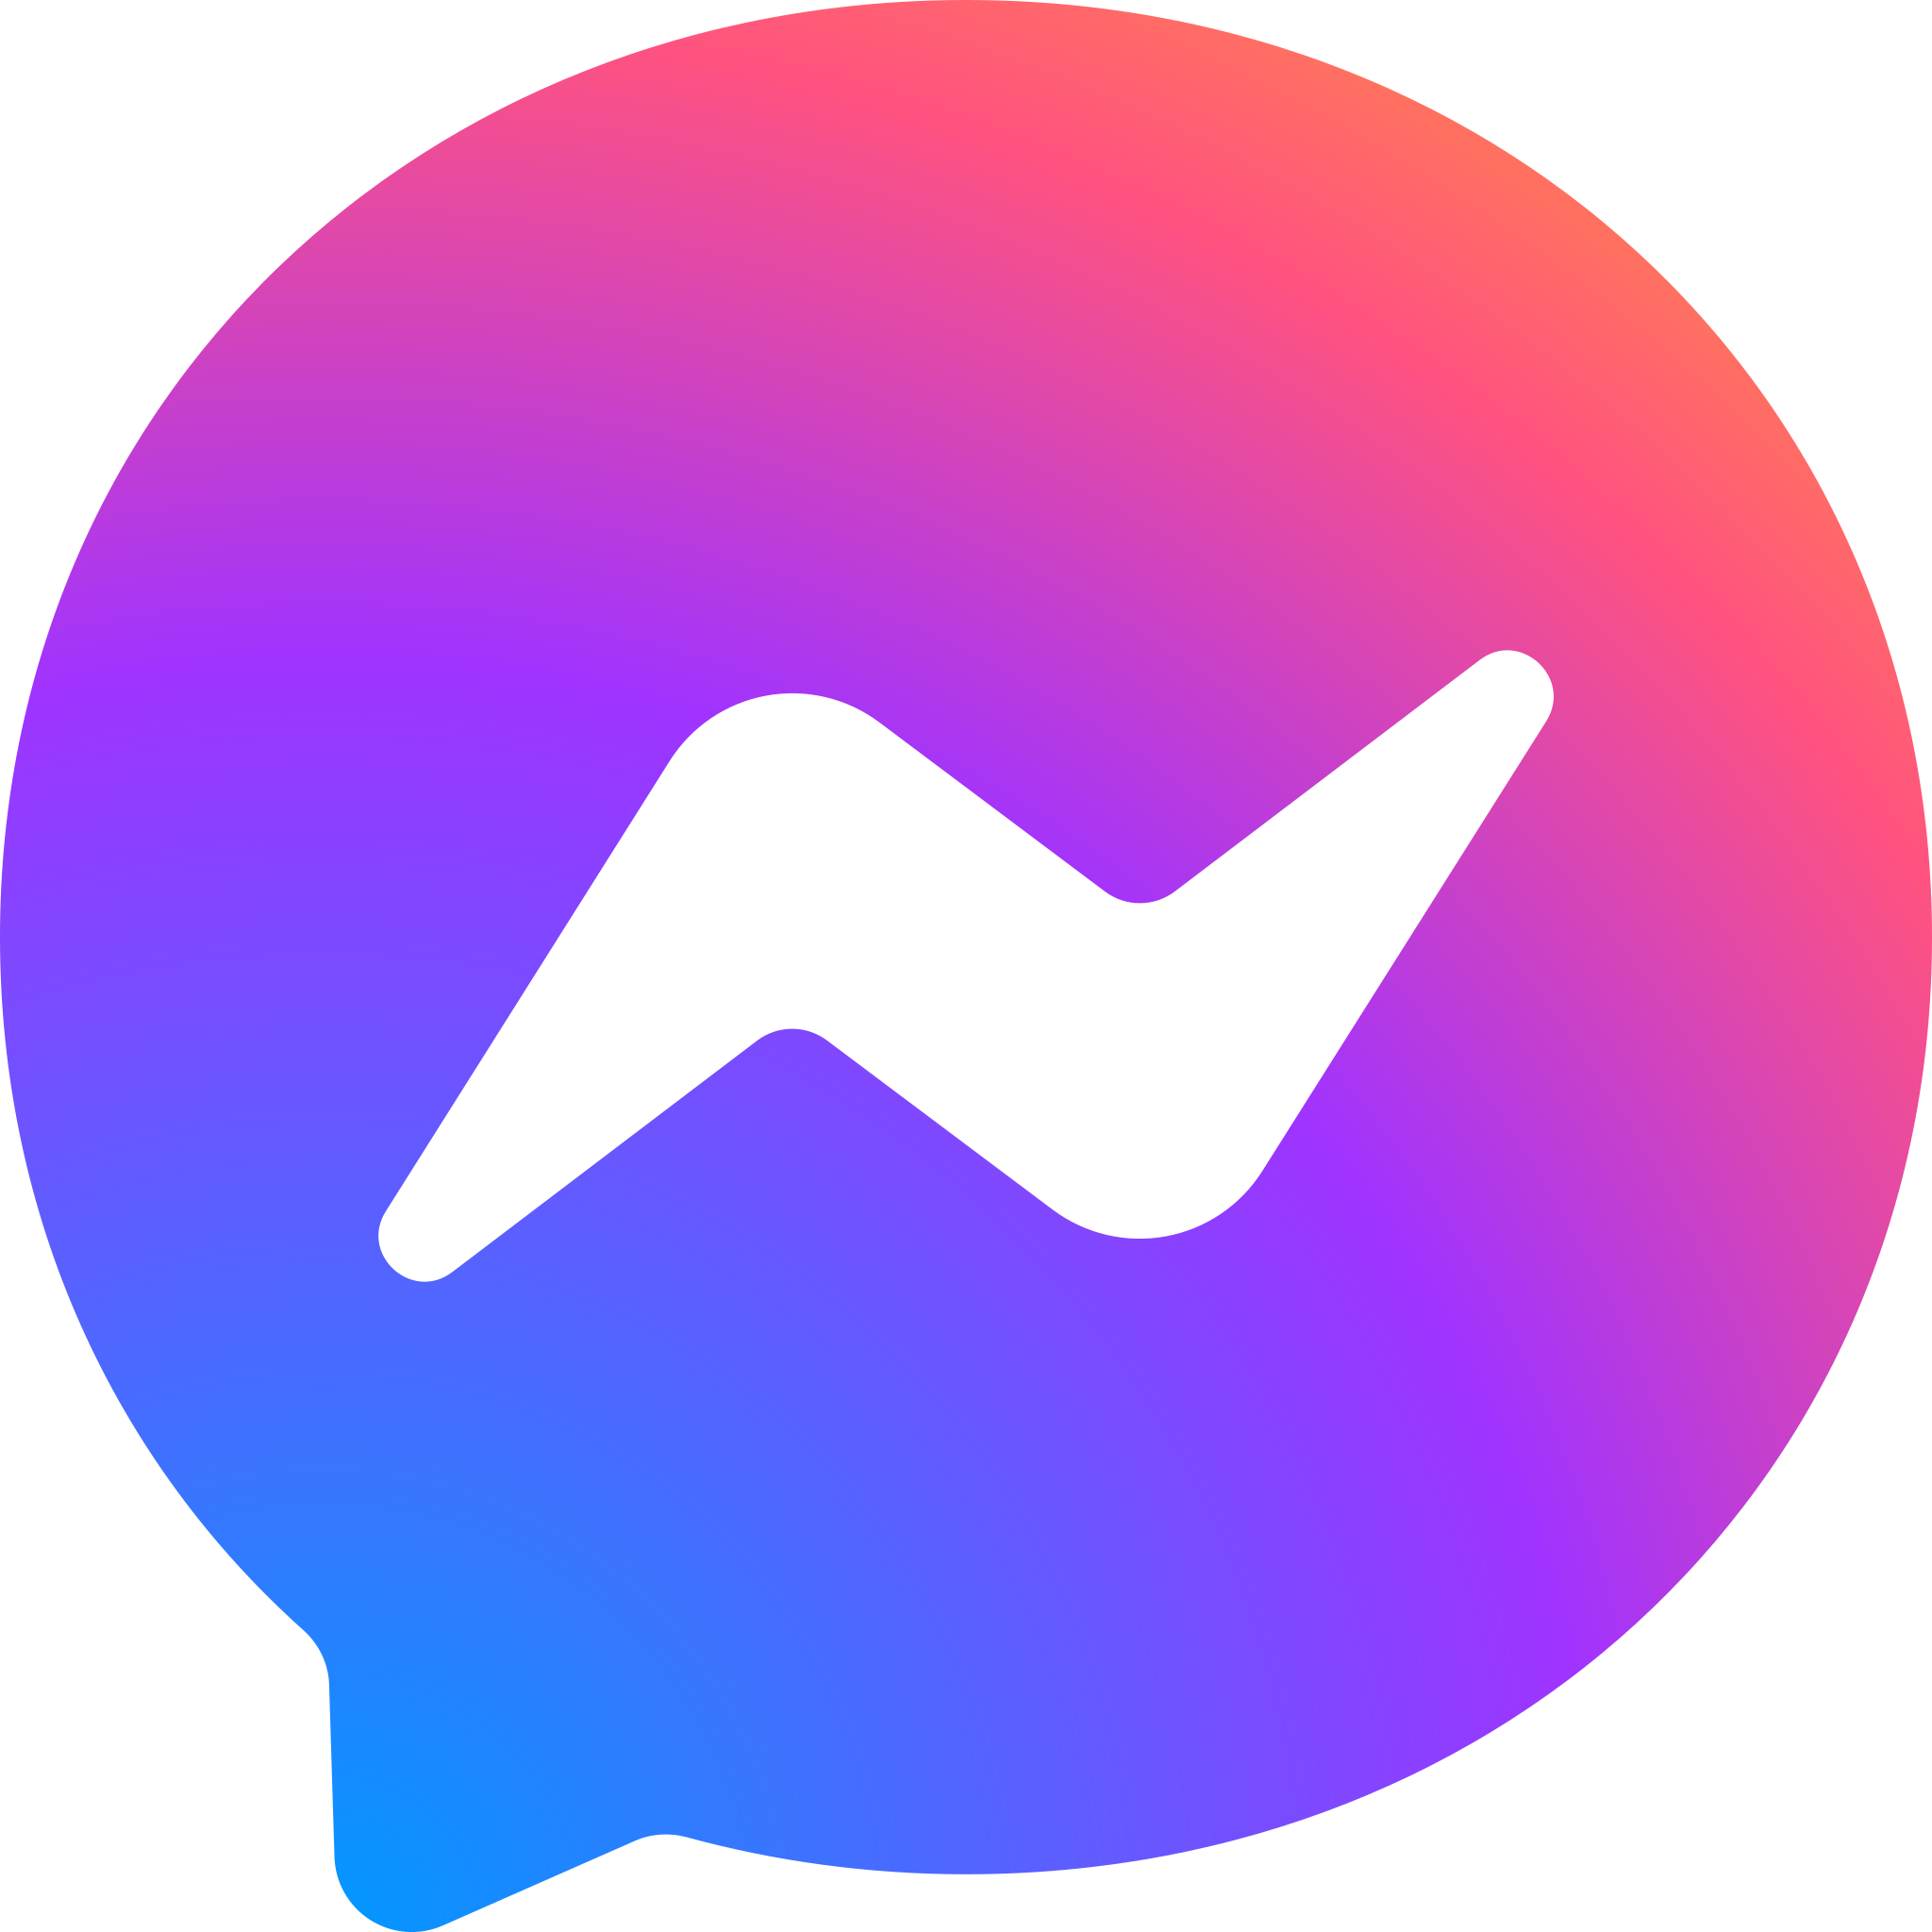 Facebook_Messenger_logo_2020.png